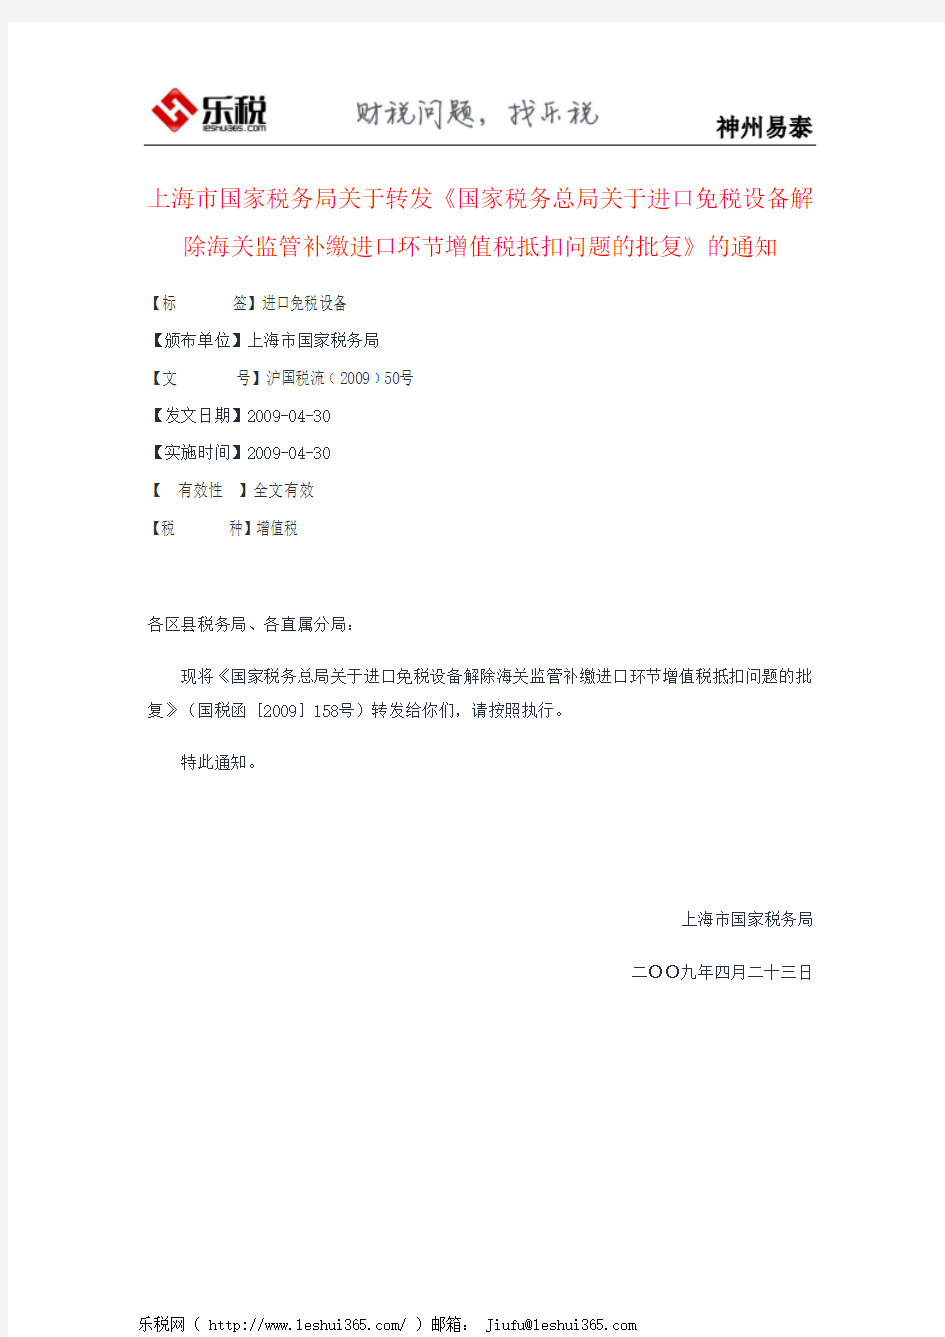 上海市国家税务局关于转发《国家税务总局关于进口免税设备解除海